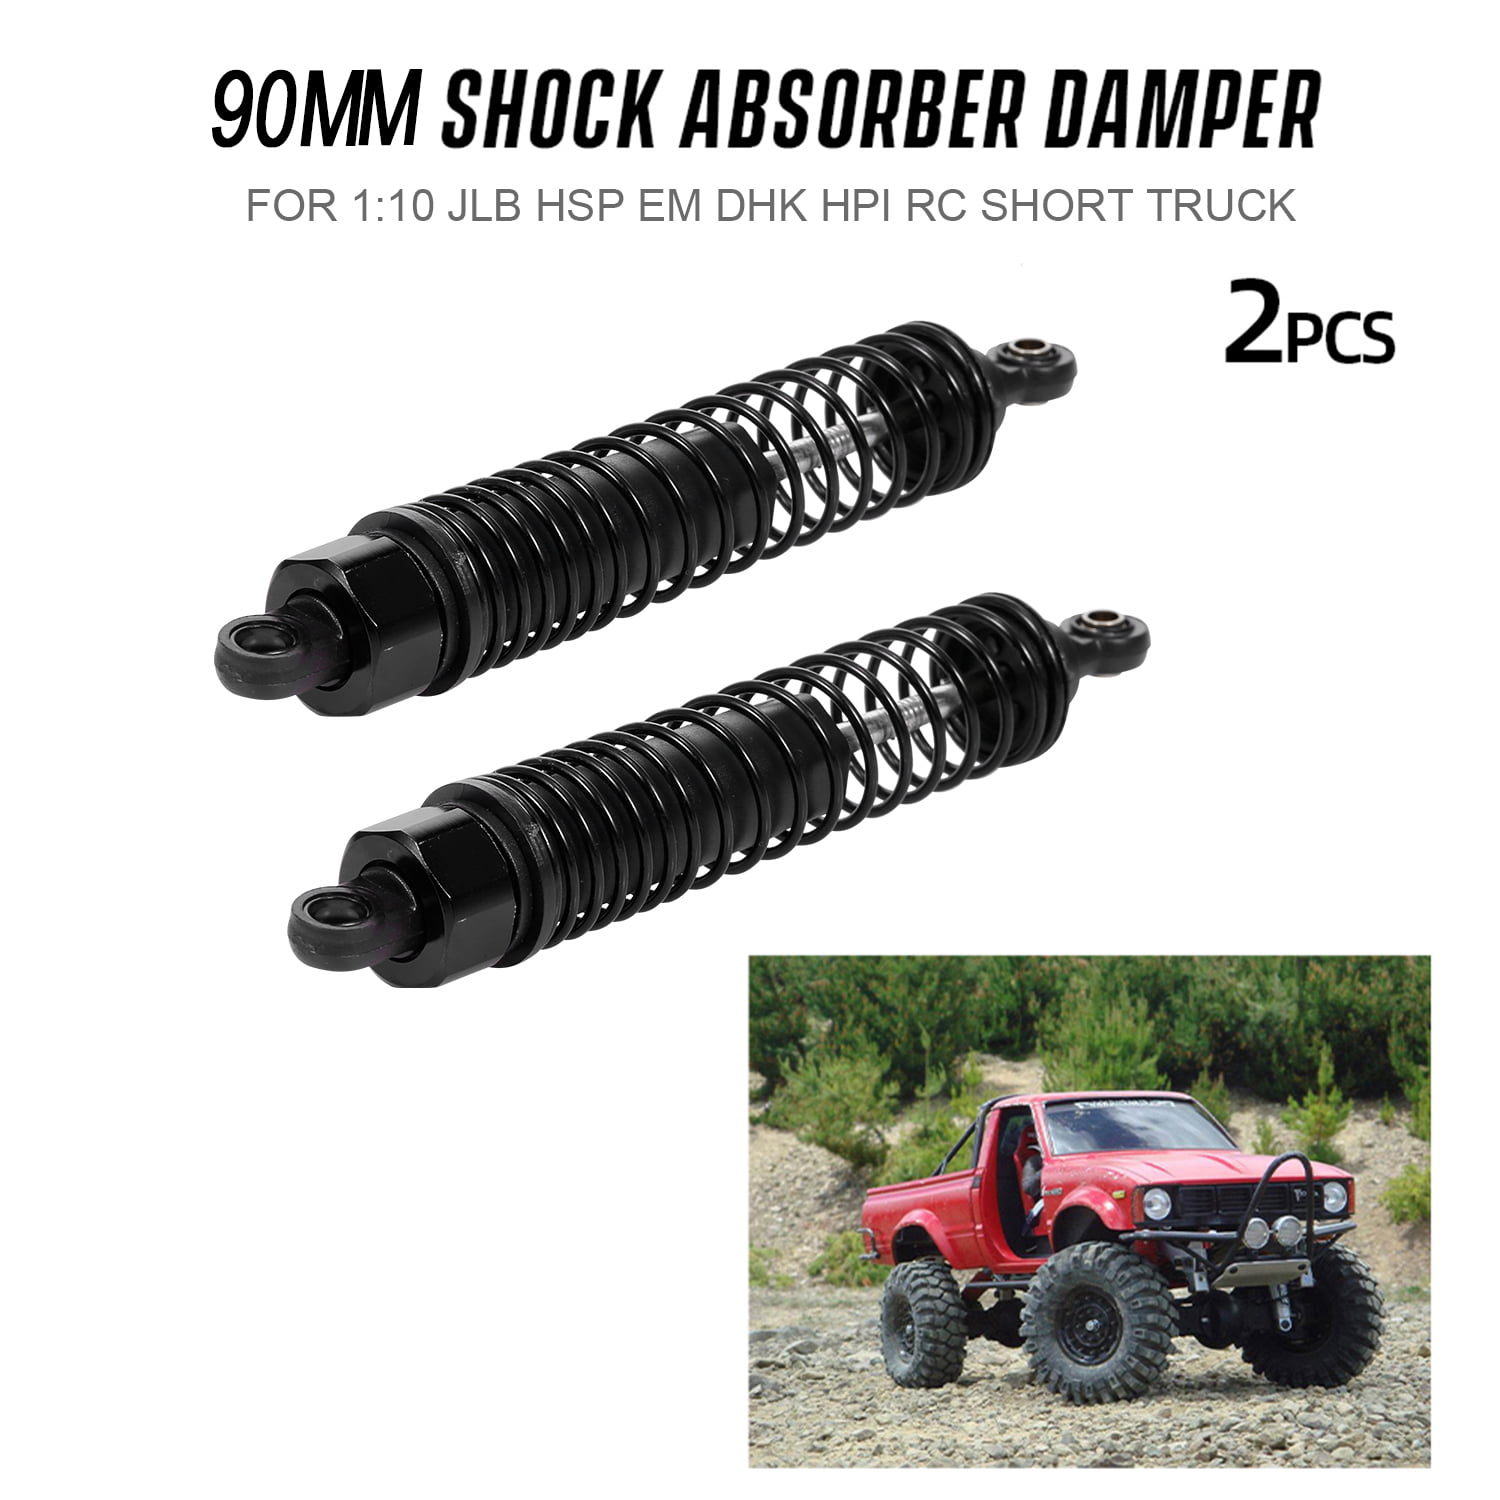 2pcs Shock Absorber Damper 90mm RC Car Parts for 1:10 JLB HSP EM DHK HPI RC T8B6 